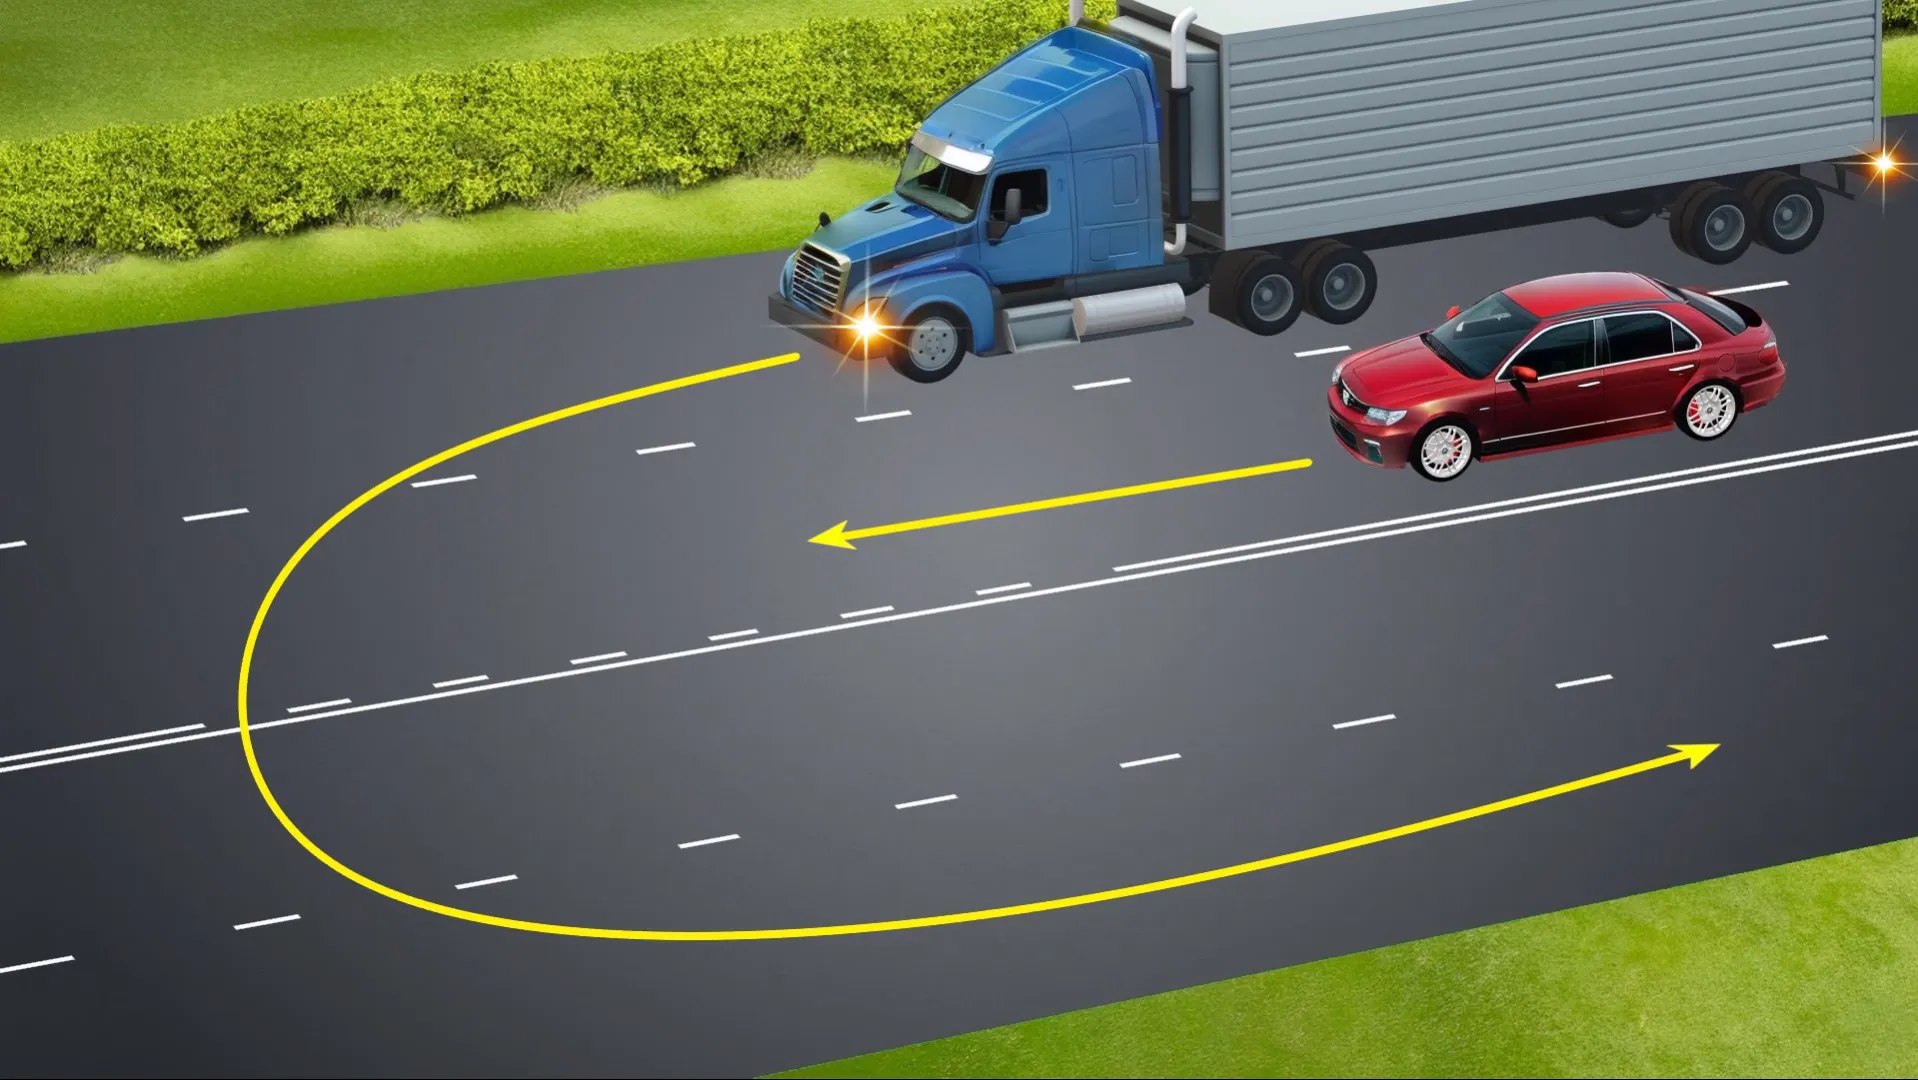 Чи дозволено вантажівці повернути ліворуч із крайнього правого ряду? Складне завдання з ПДР